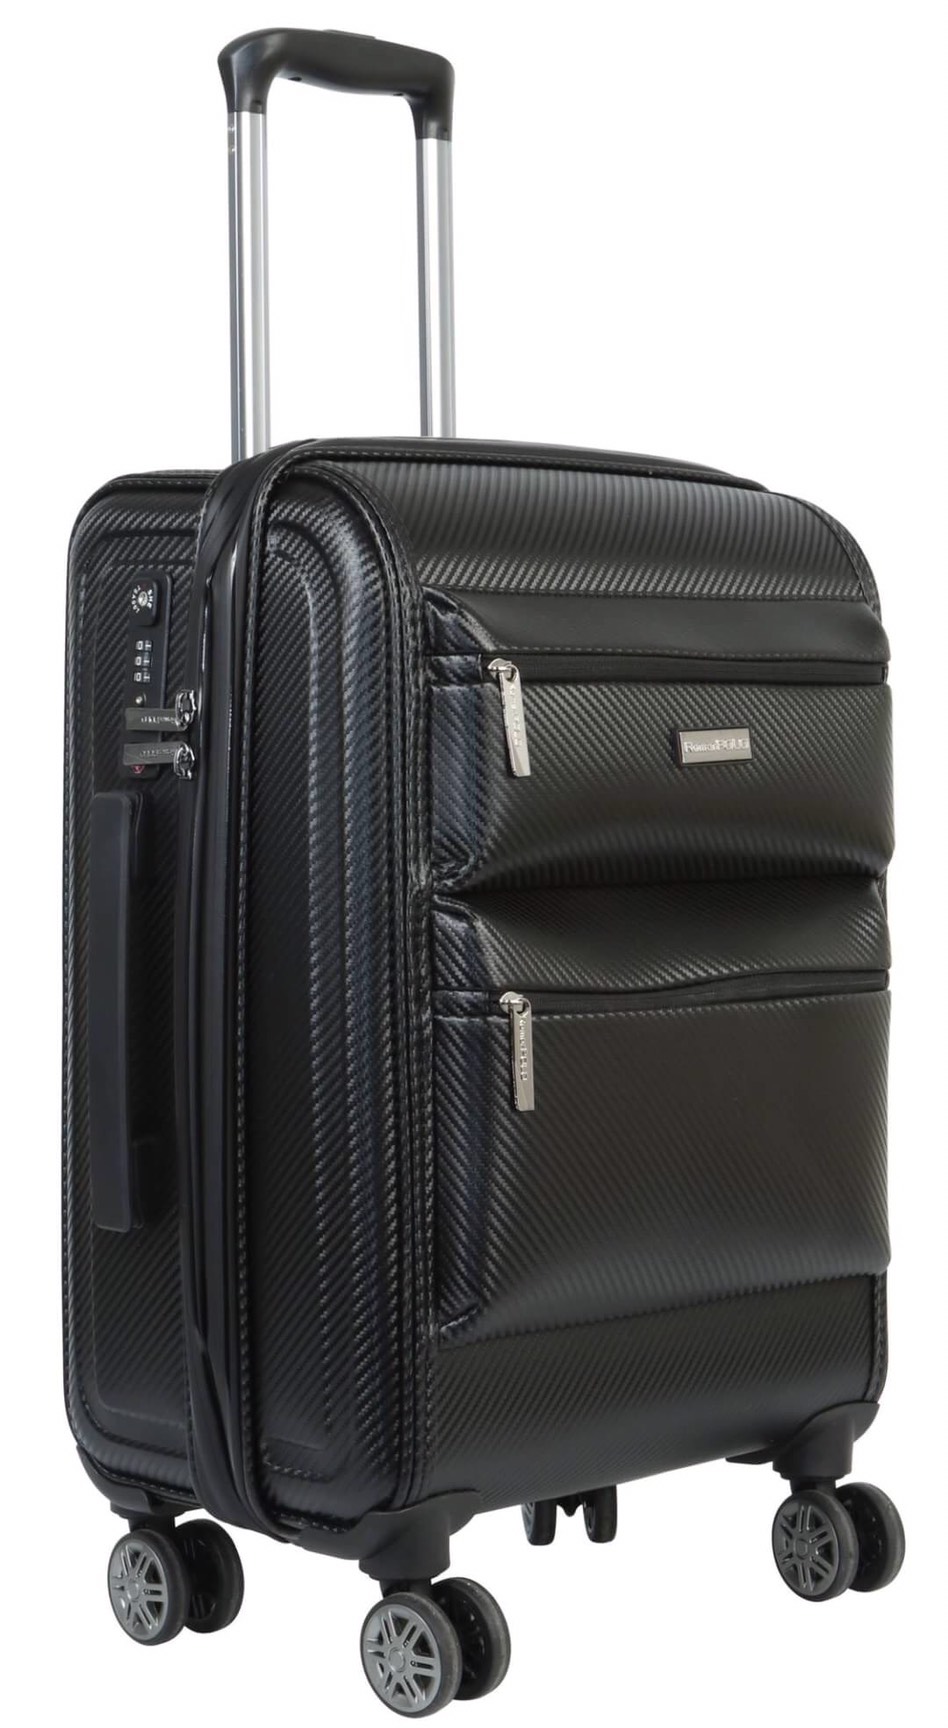 กระเป๋าเดินทาง Romar Polo ระบบรหัสล๊อค TSA ขนาด 20 นิ้ว 4 ล้อคู่ หมุน 360° รุ่น RI1920